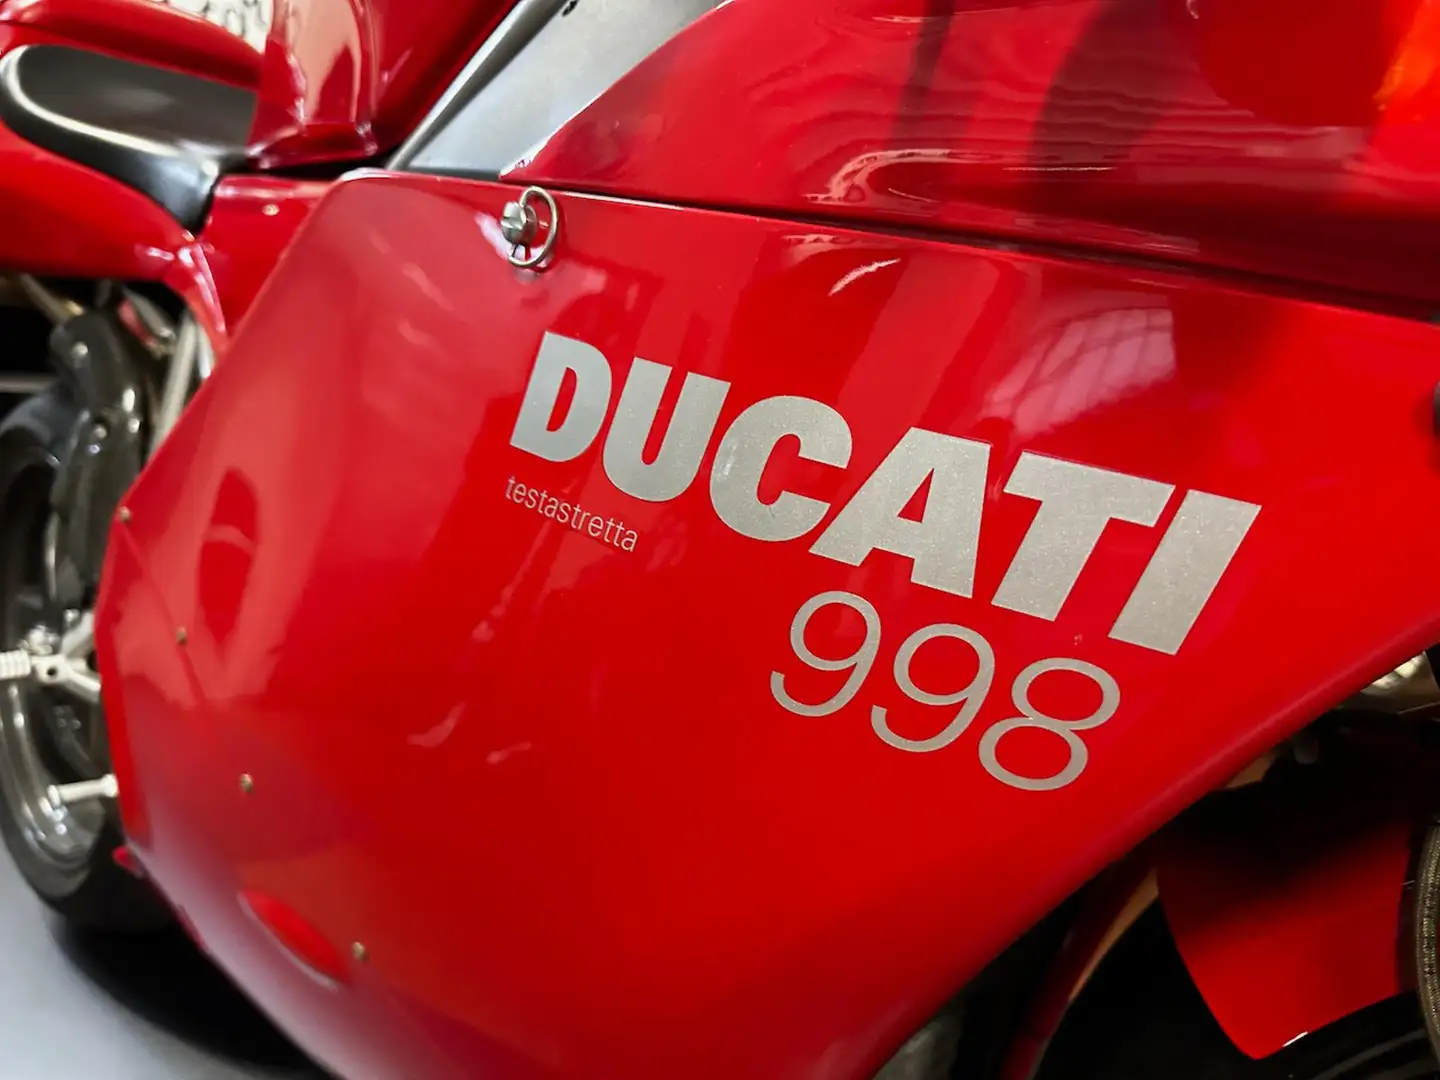 Ducati 998 ORIGINALE Piros - 2